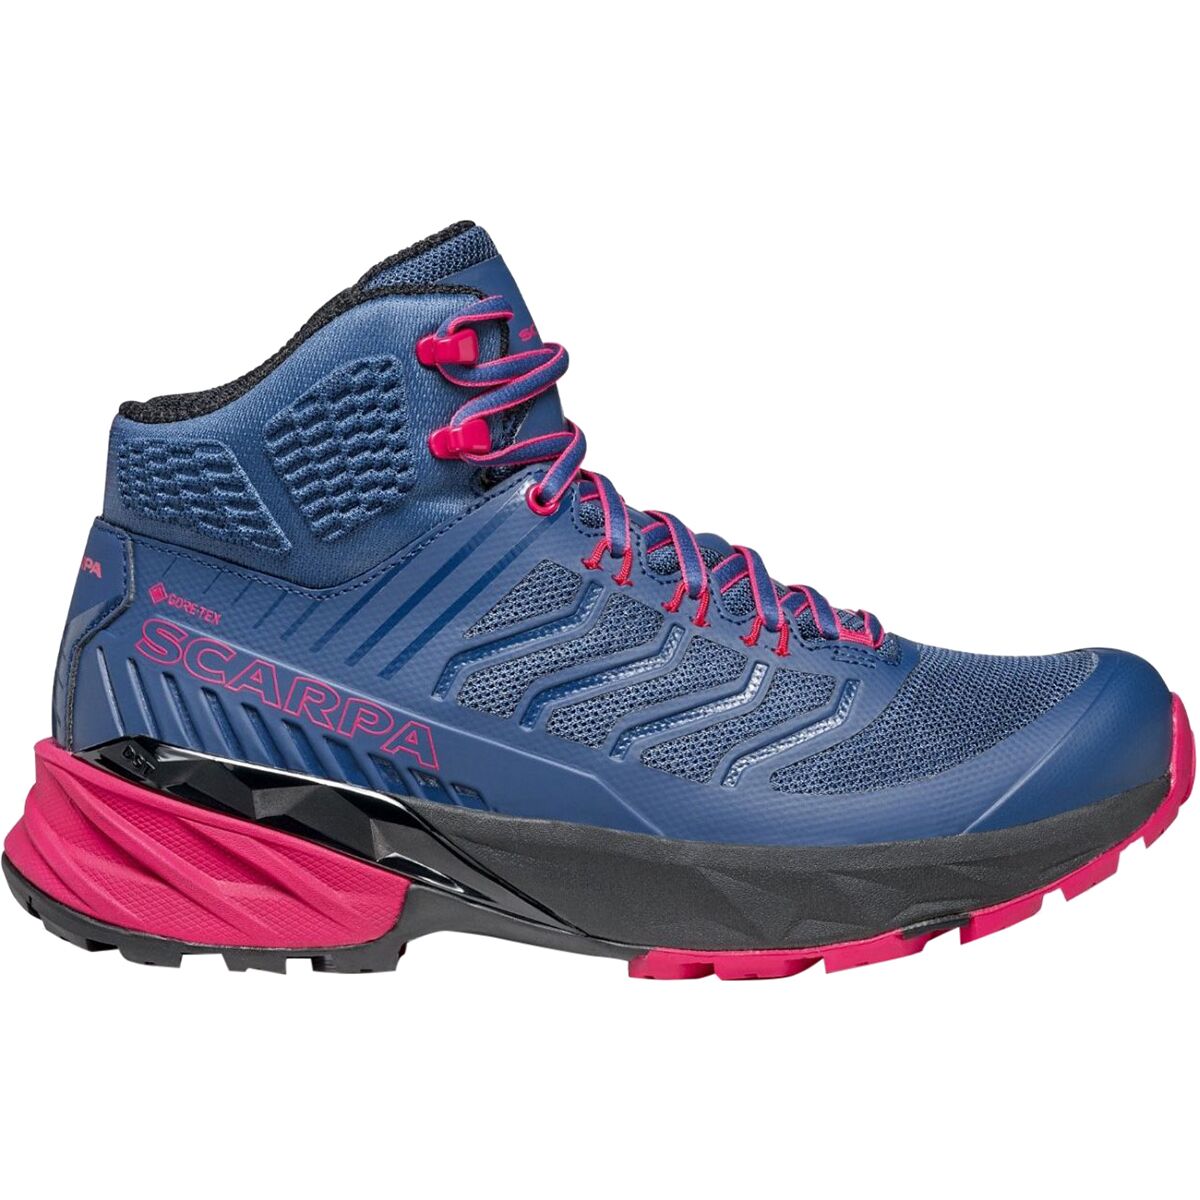 Scarpa Rush Mid GTX Hiking Shoe - Women's